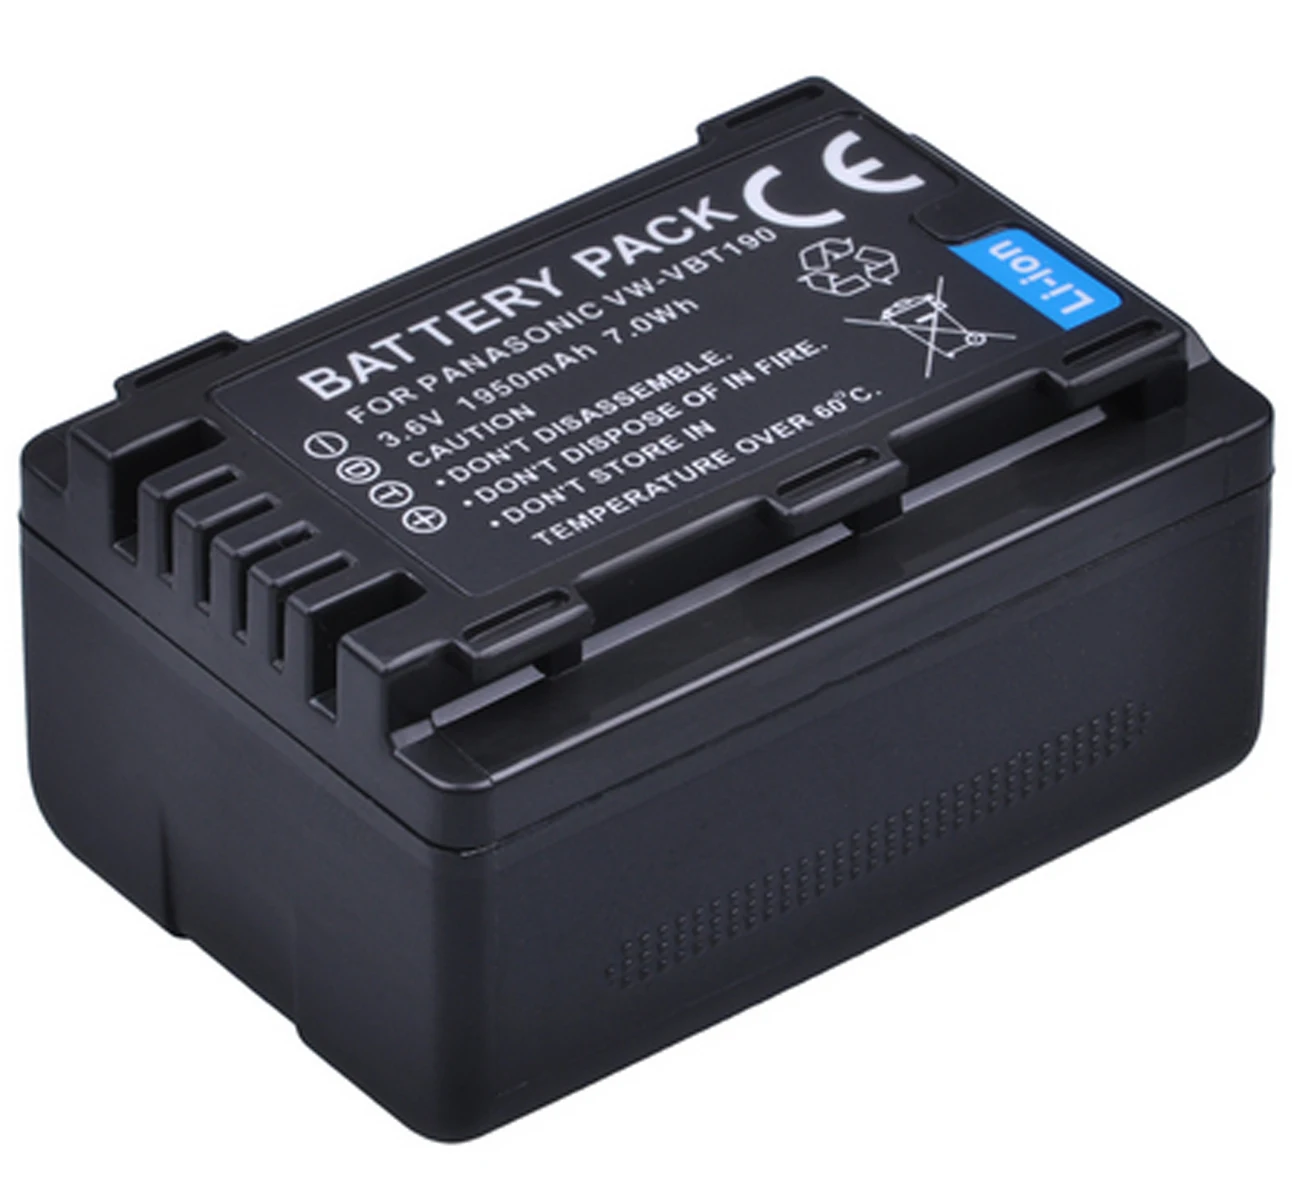 Battery Pack for Panasonic HC-VX870, HC-VX980, HC-VX981, HC-VX985, HC-VX989, HC-VXF990, HC-VXF995, HC-VXF999 4K HD Camcorder